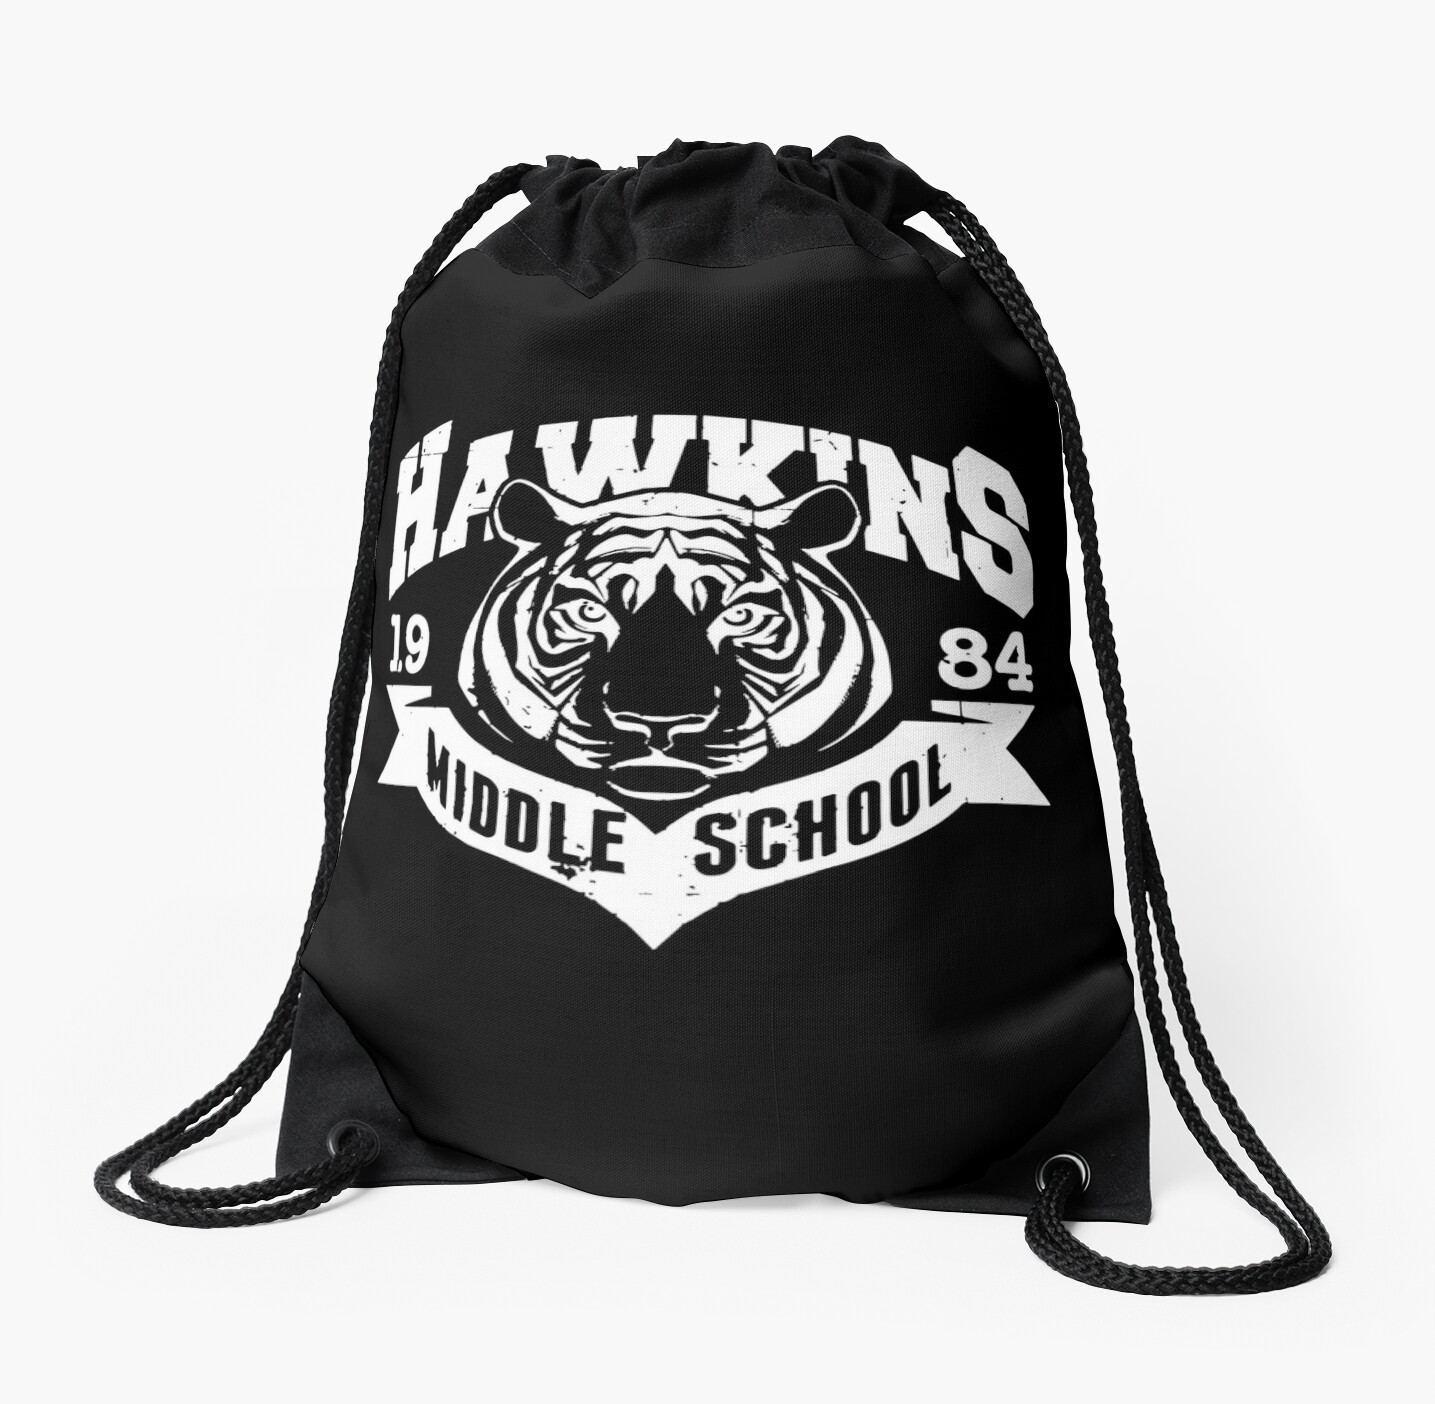 Stranger Things Hawkins Middle School Drawstring Bag By Trndsttrz